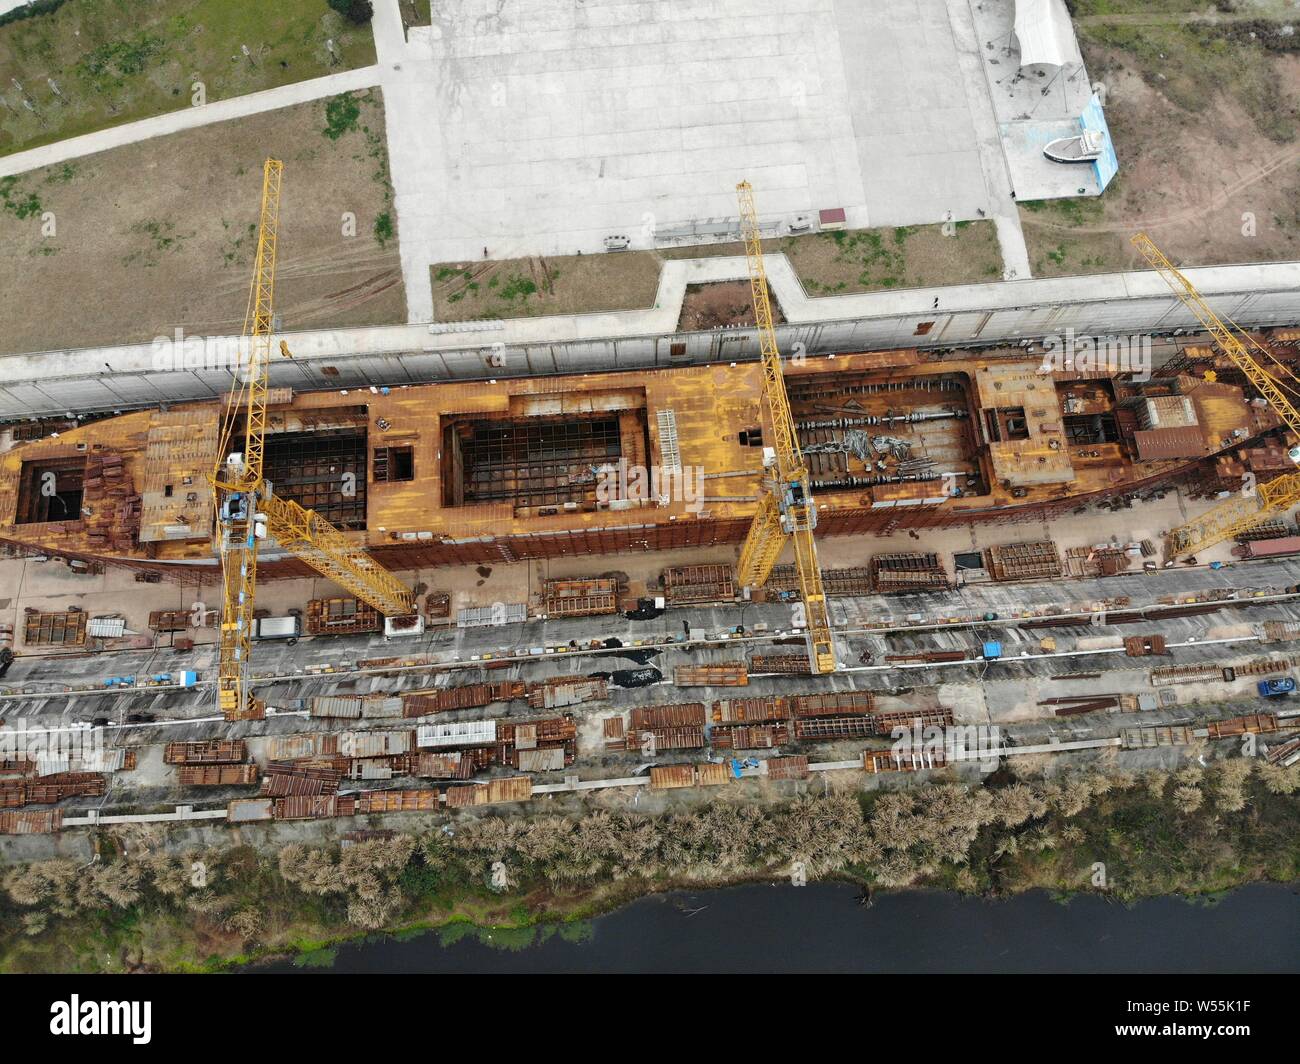 Vue aérienne du site de construction d'une réplique grandeur nature du paquebot Titanic dans le comté de Daying, ville de Suining, au sud-ouest du Sichuan en Chine Banque D'Images